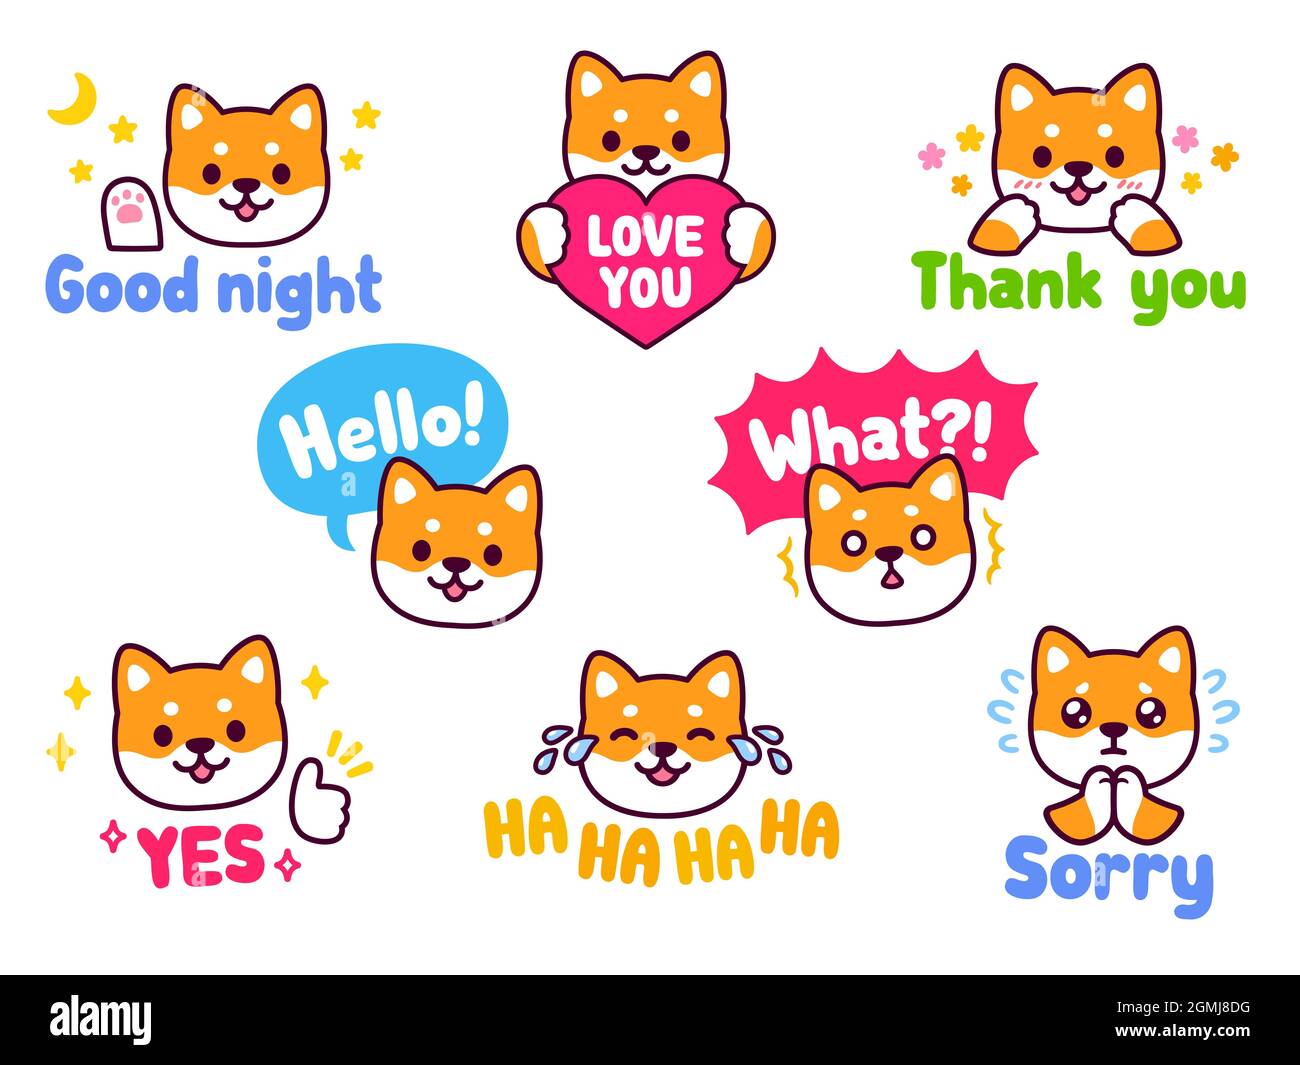 Carino set di adesivi per cani Shiba Inu. Chattate emoji con messaggi di testo: Ciao, Spiacenti, grazie, Love You, ecc Kawaii mascotte illustrazione vettoriale. Illustrazione Vettoriale